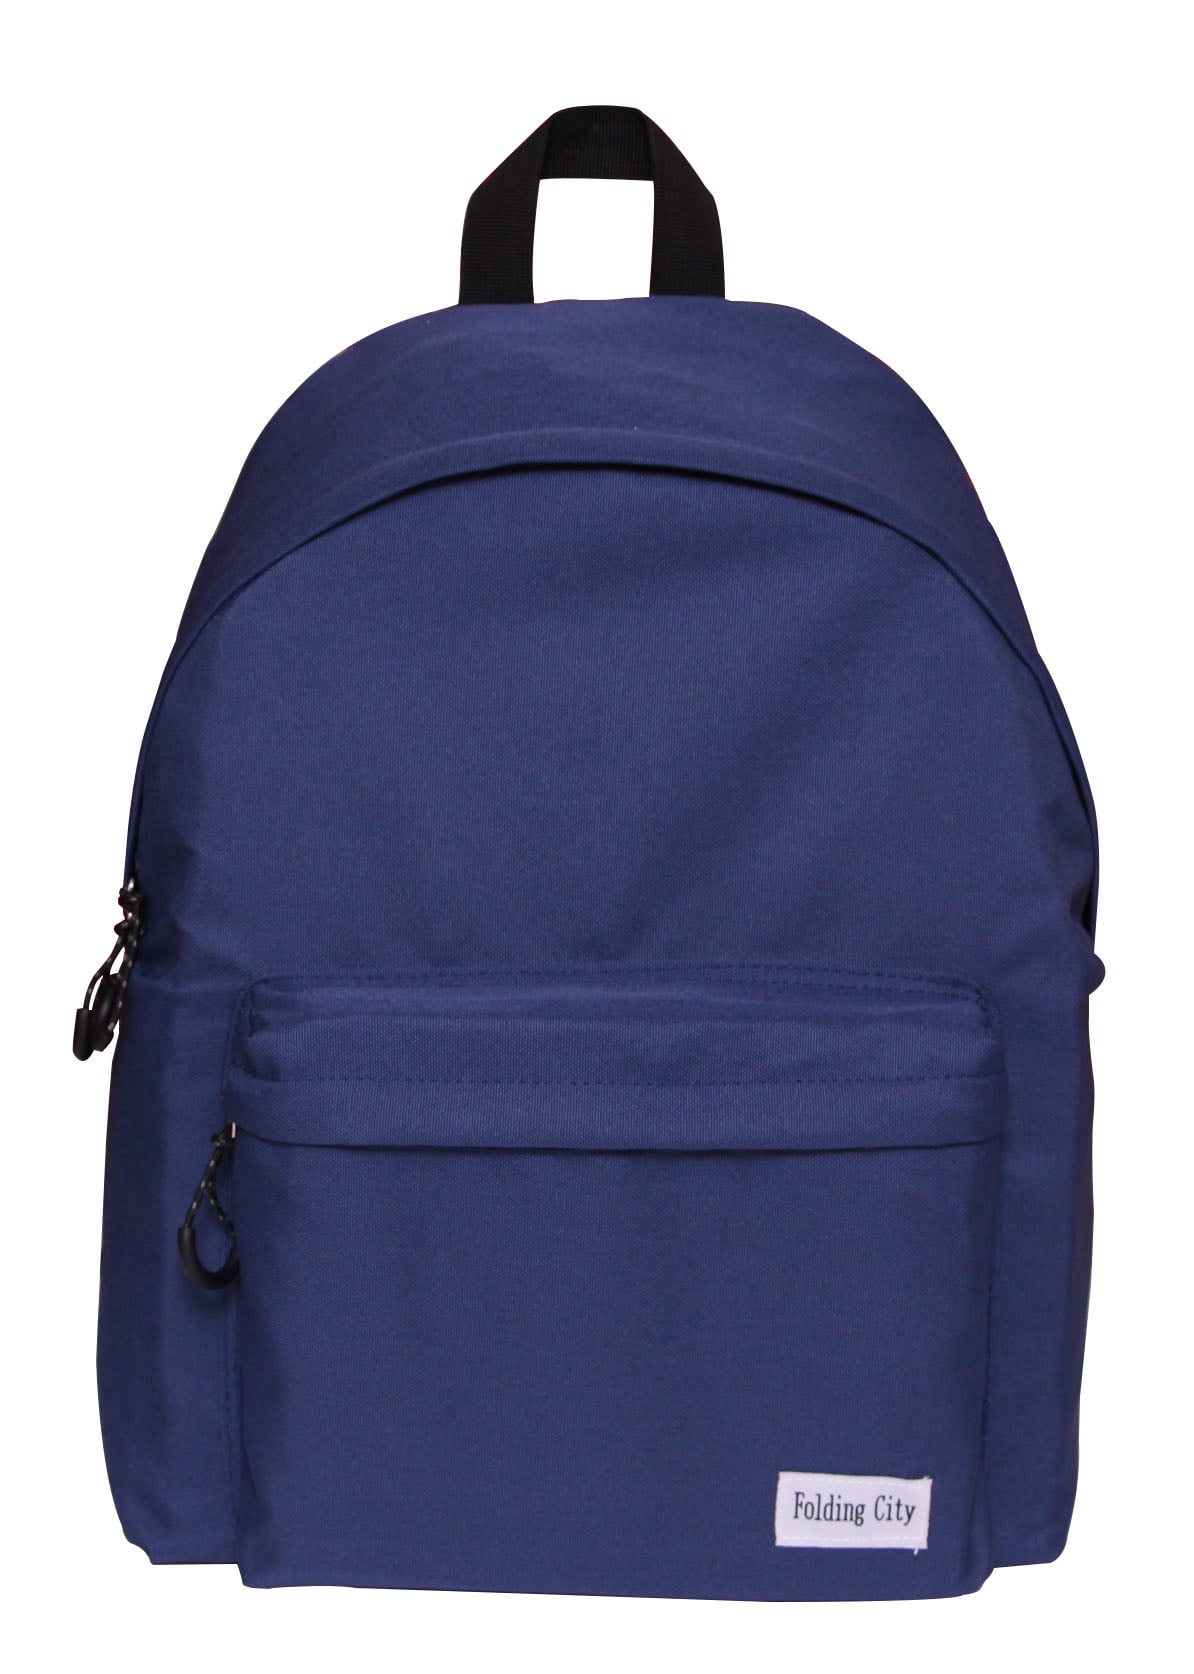 SHARP-Q Cat Kids Lightweight Canvas Travel Backpacks School Book Bag